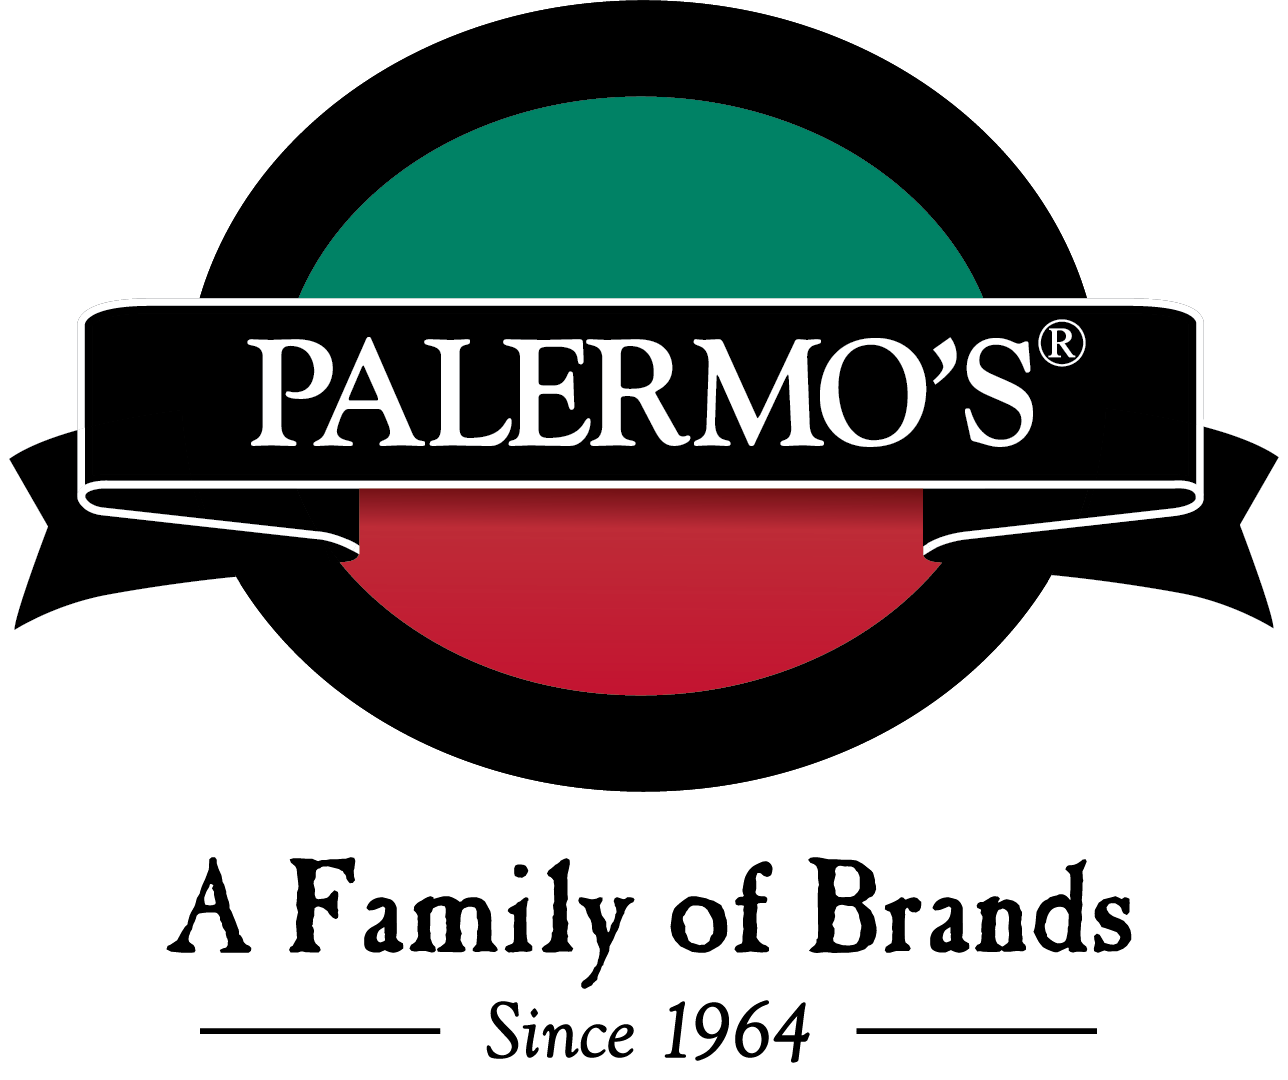  Palermo’s pizza company logo 